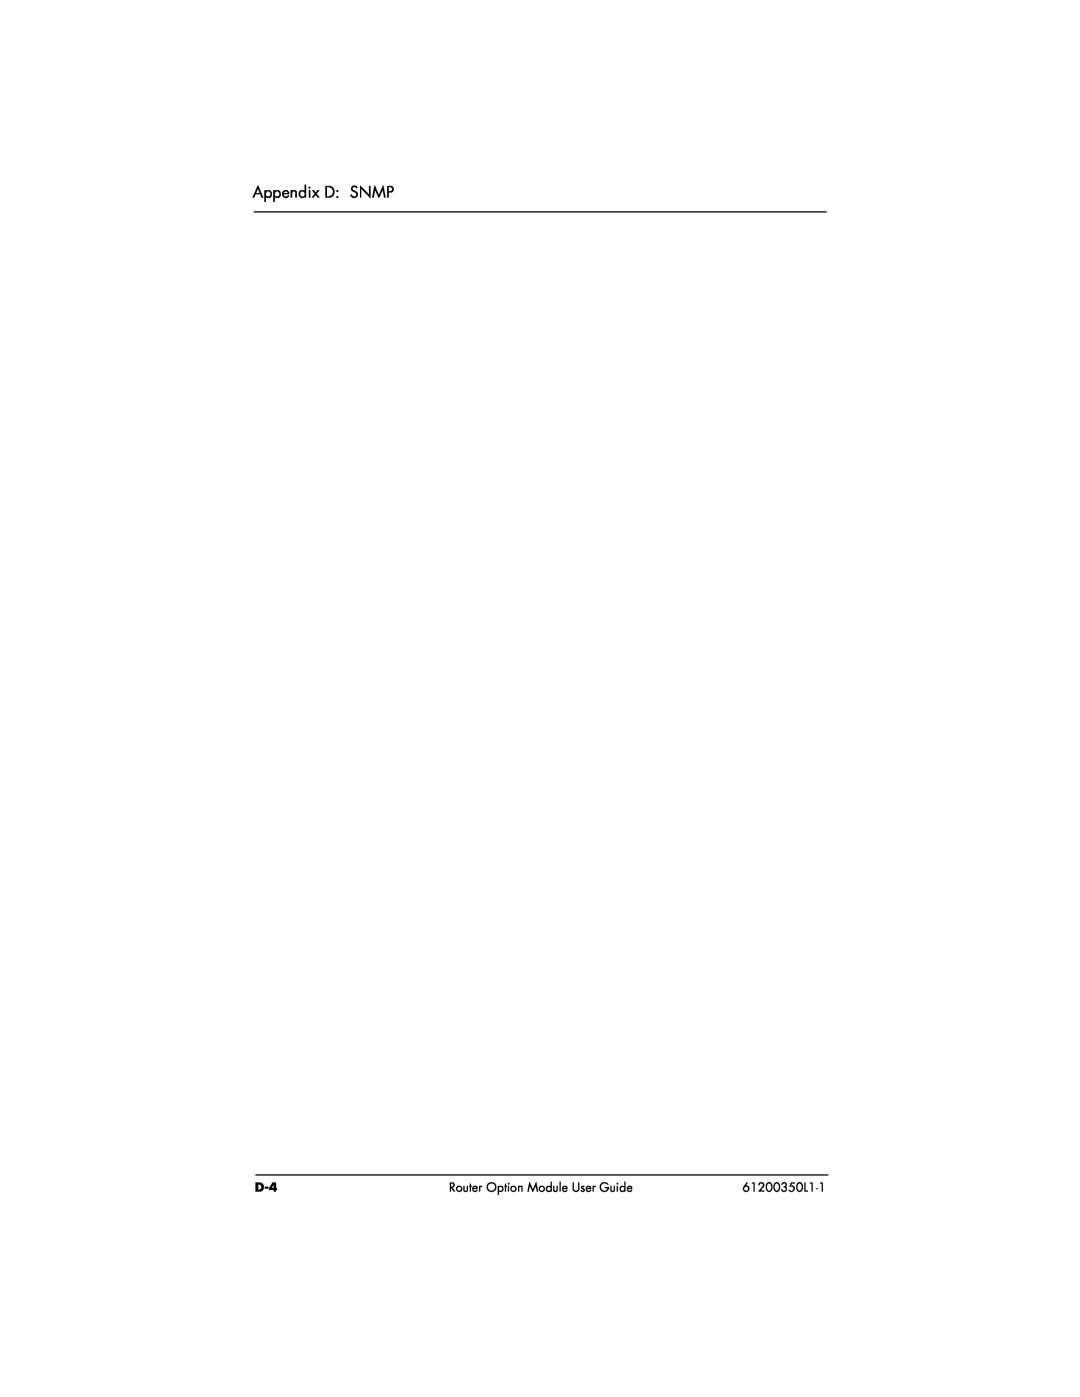 ADTRAN user manual Appendix D SNMP, Router Option Module User Guide, 61200350L1-1 